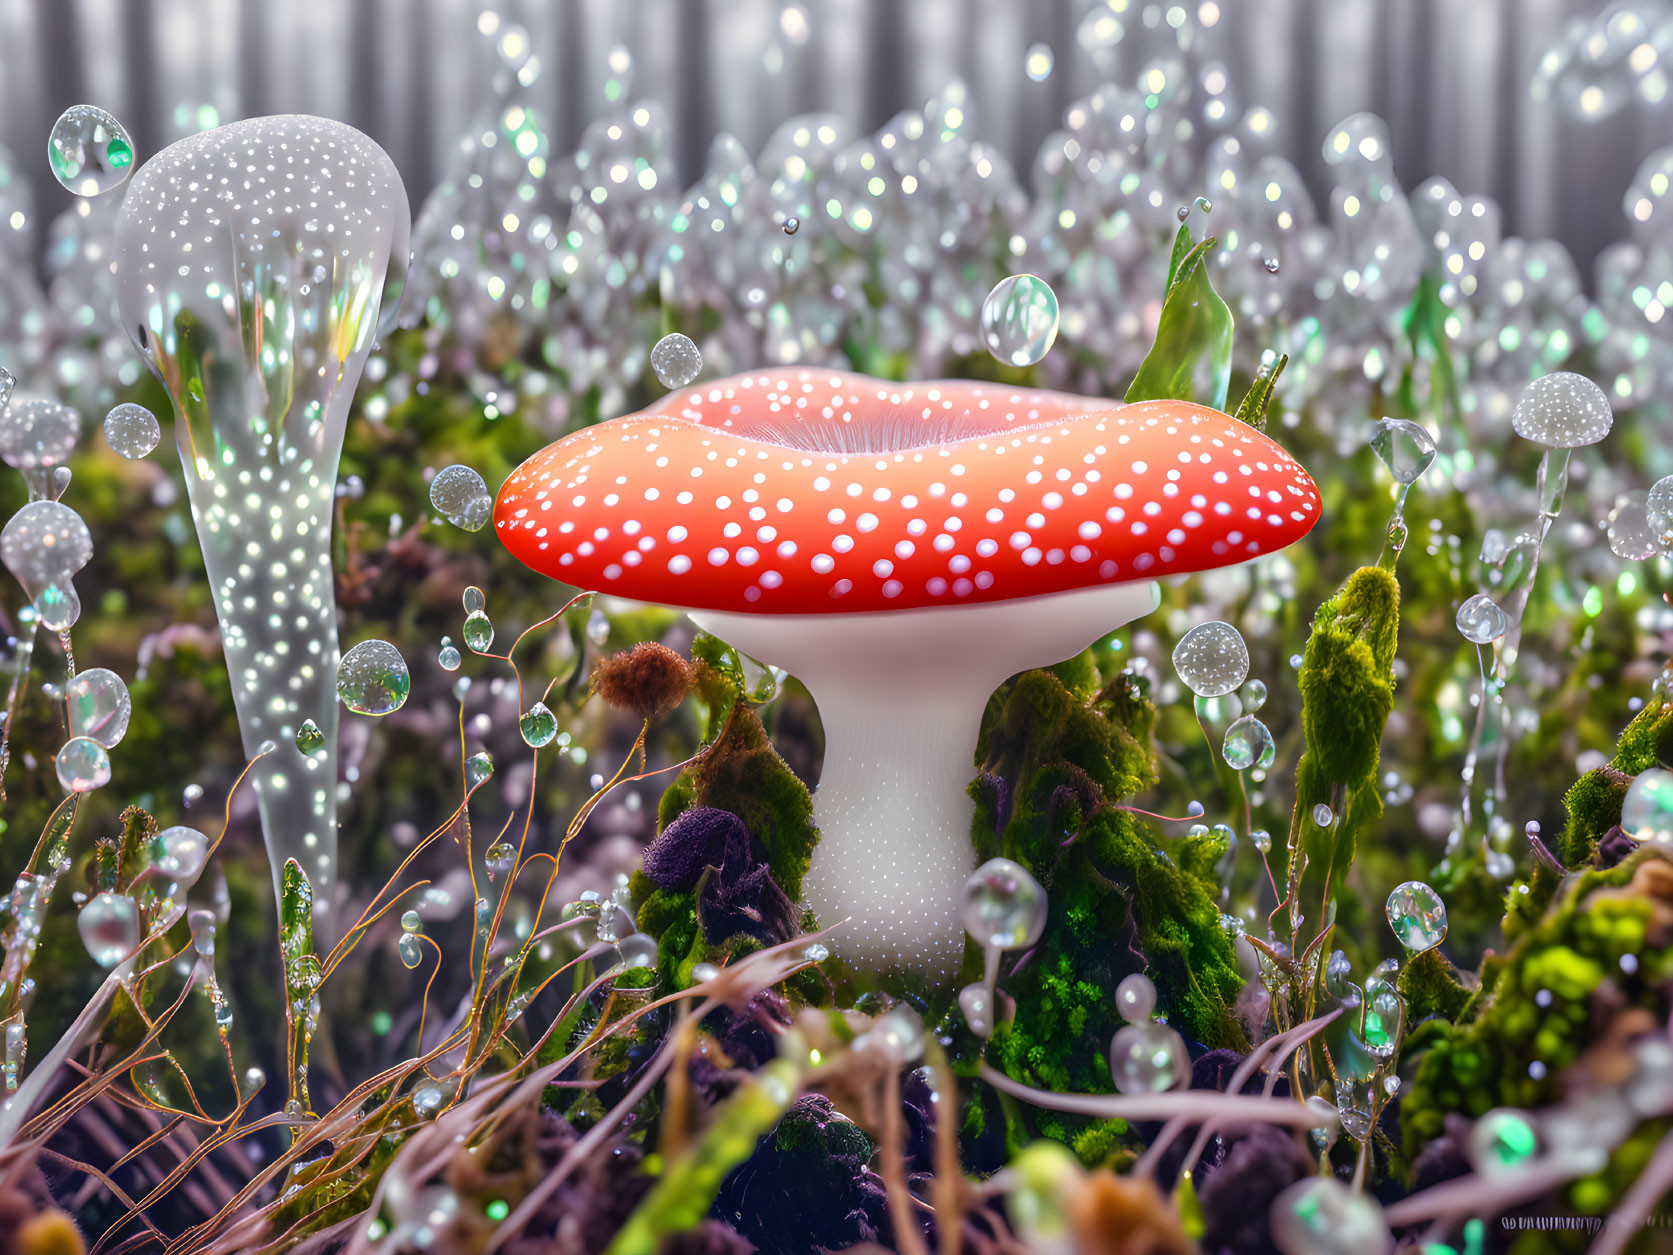 Futuristic mushroom